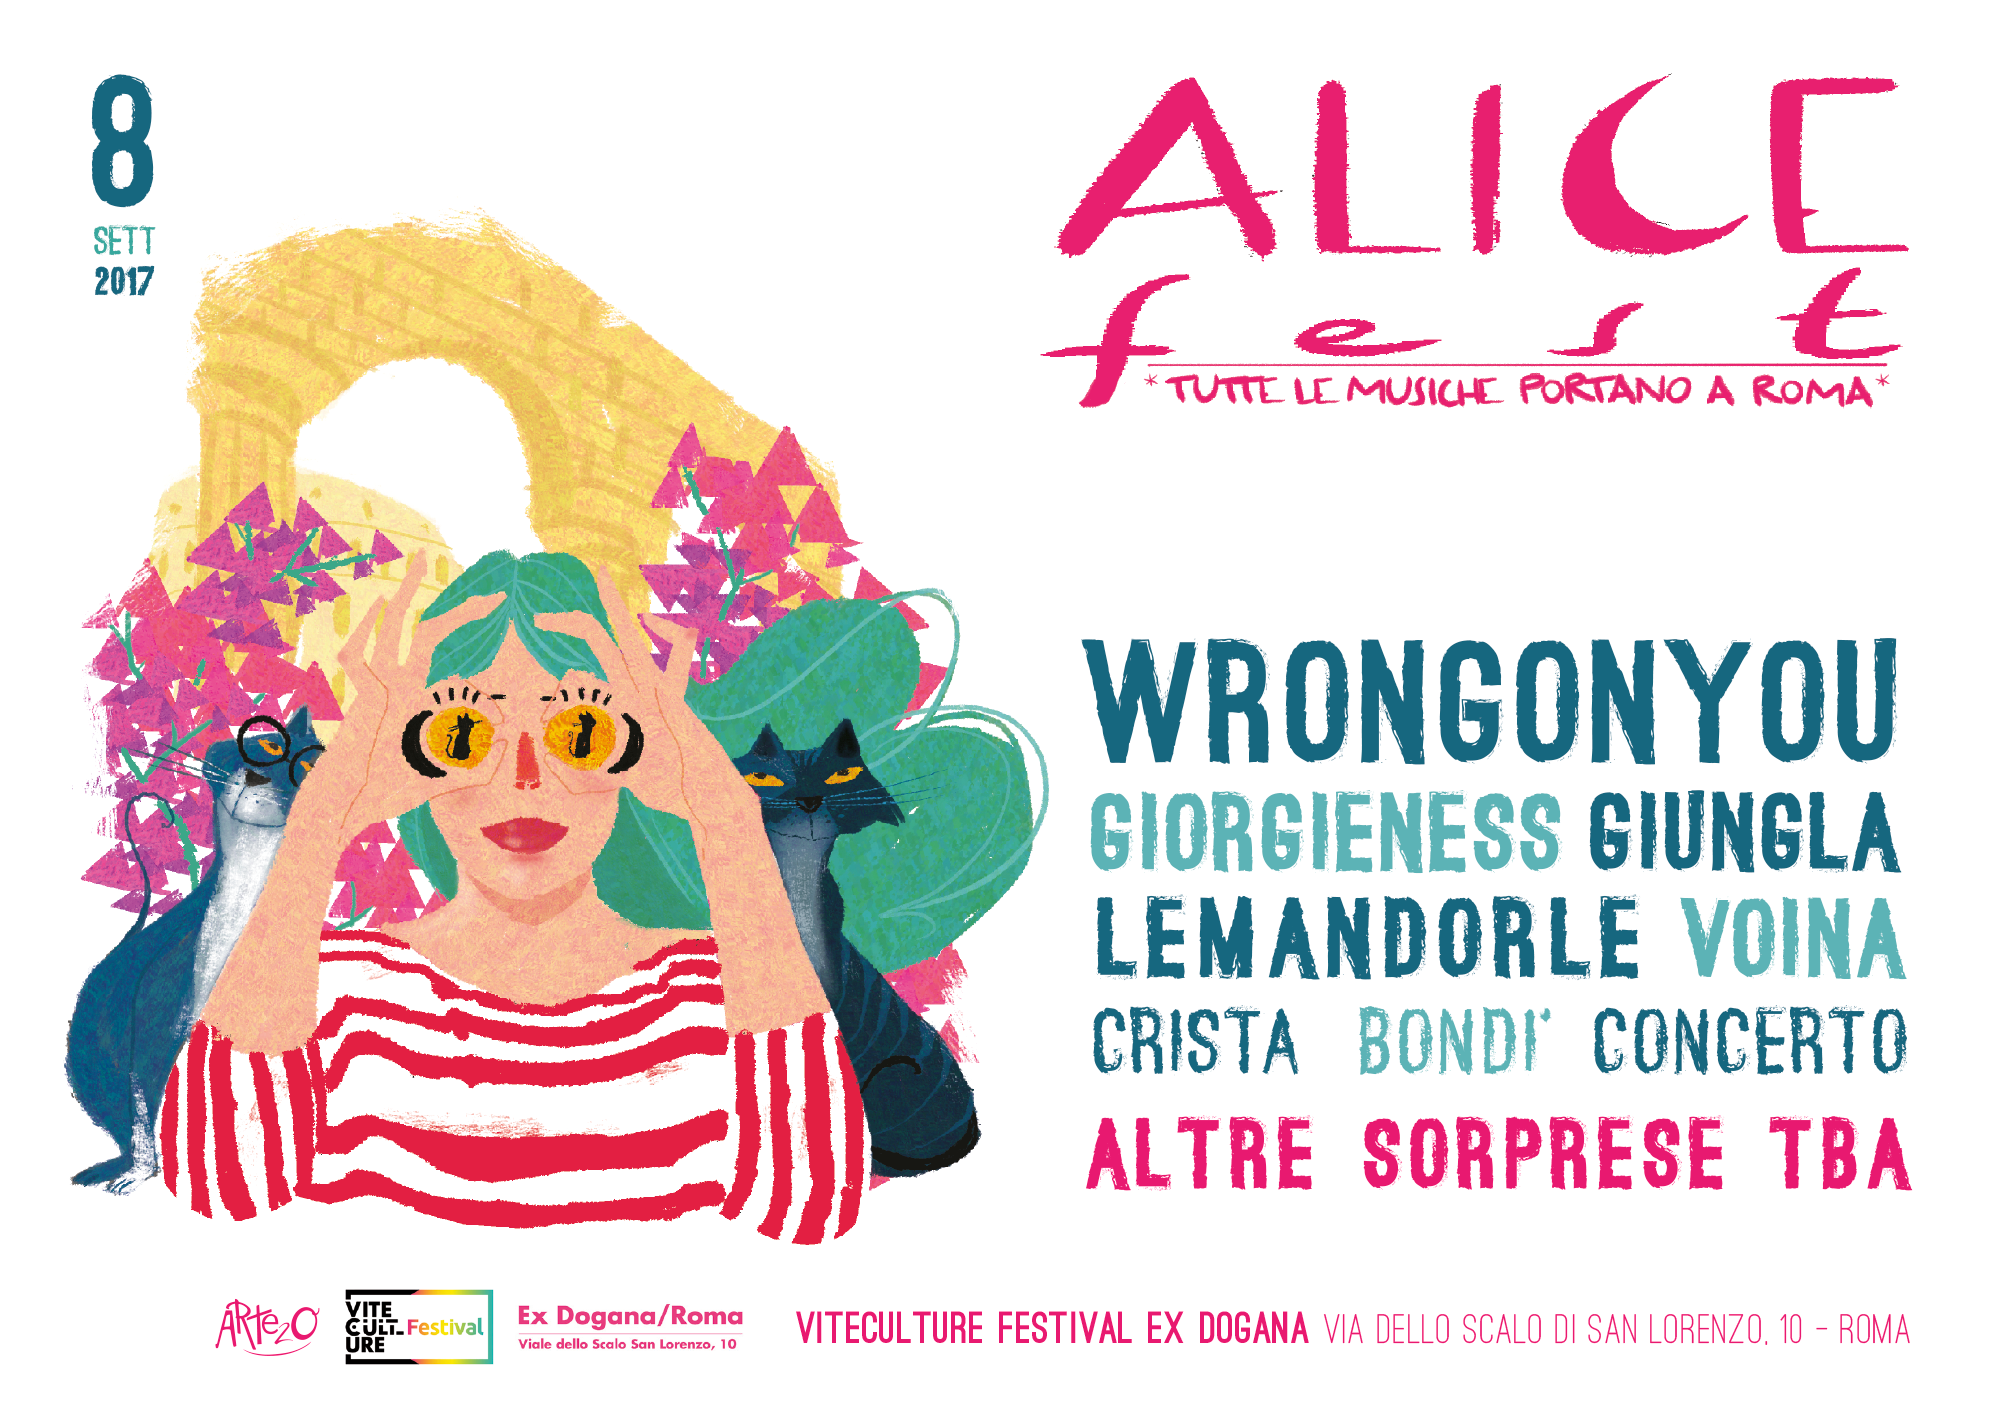 Alice Fest: tutte le musiche portano a Roma… L’8 settembre all’Ex Dogana